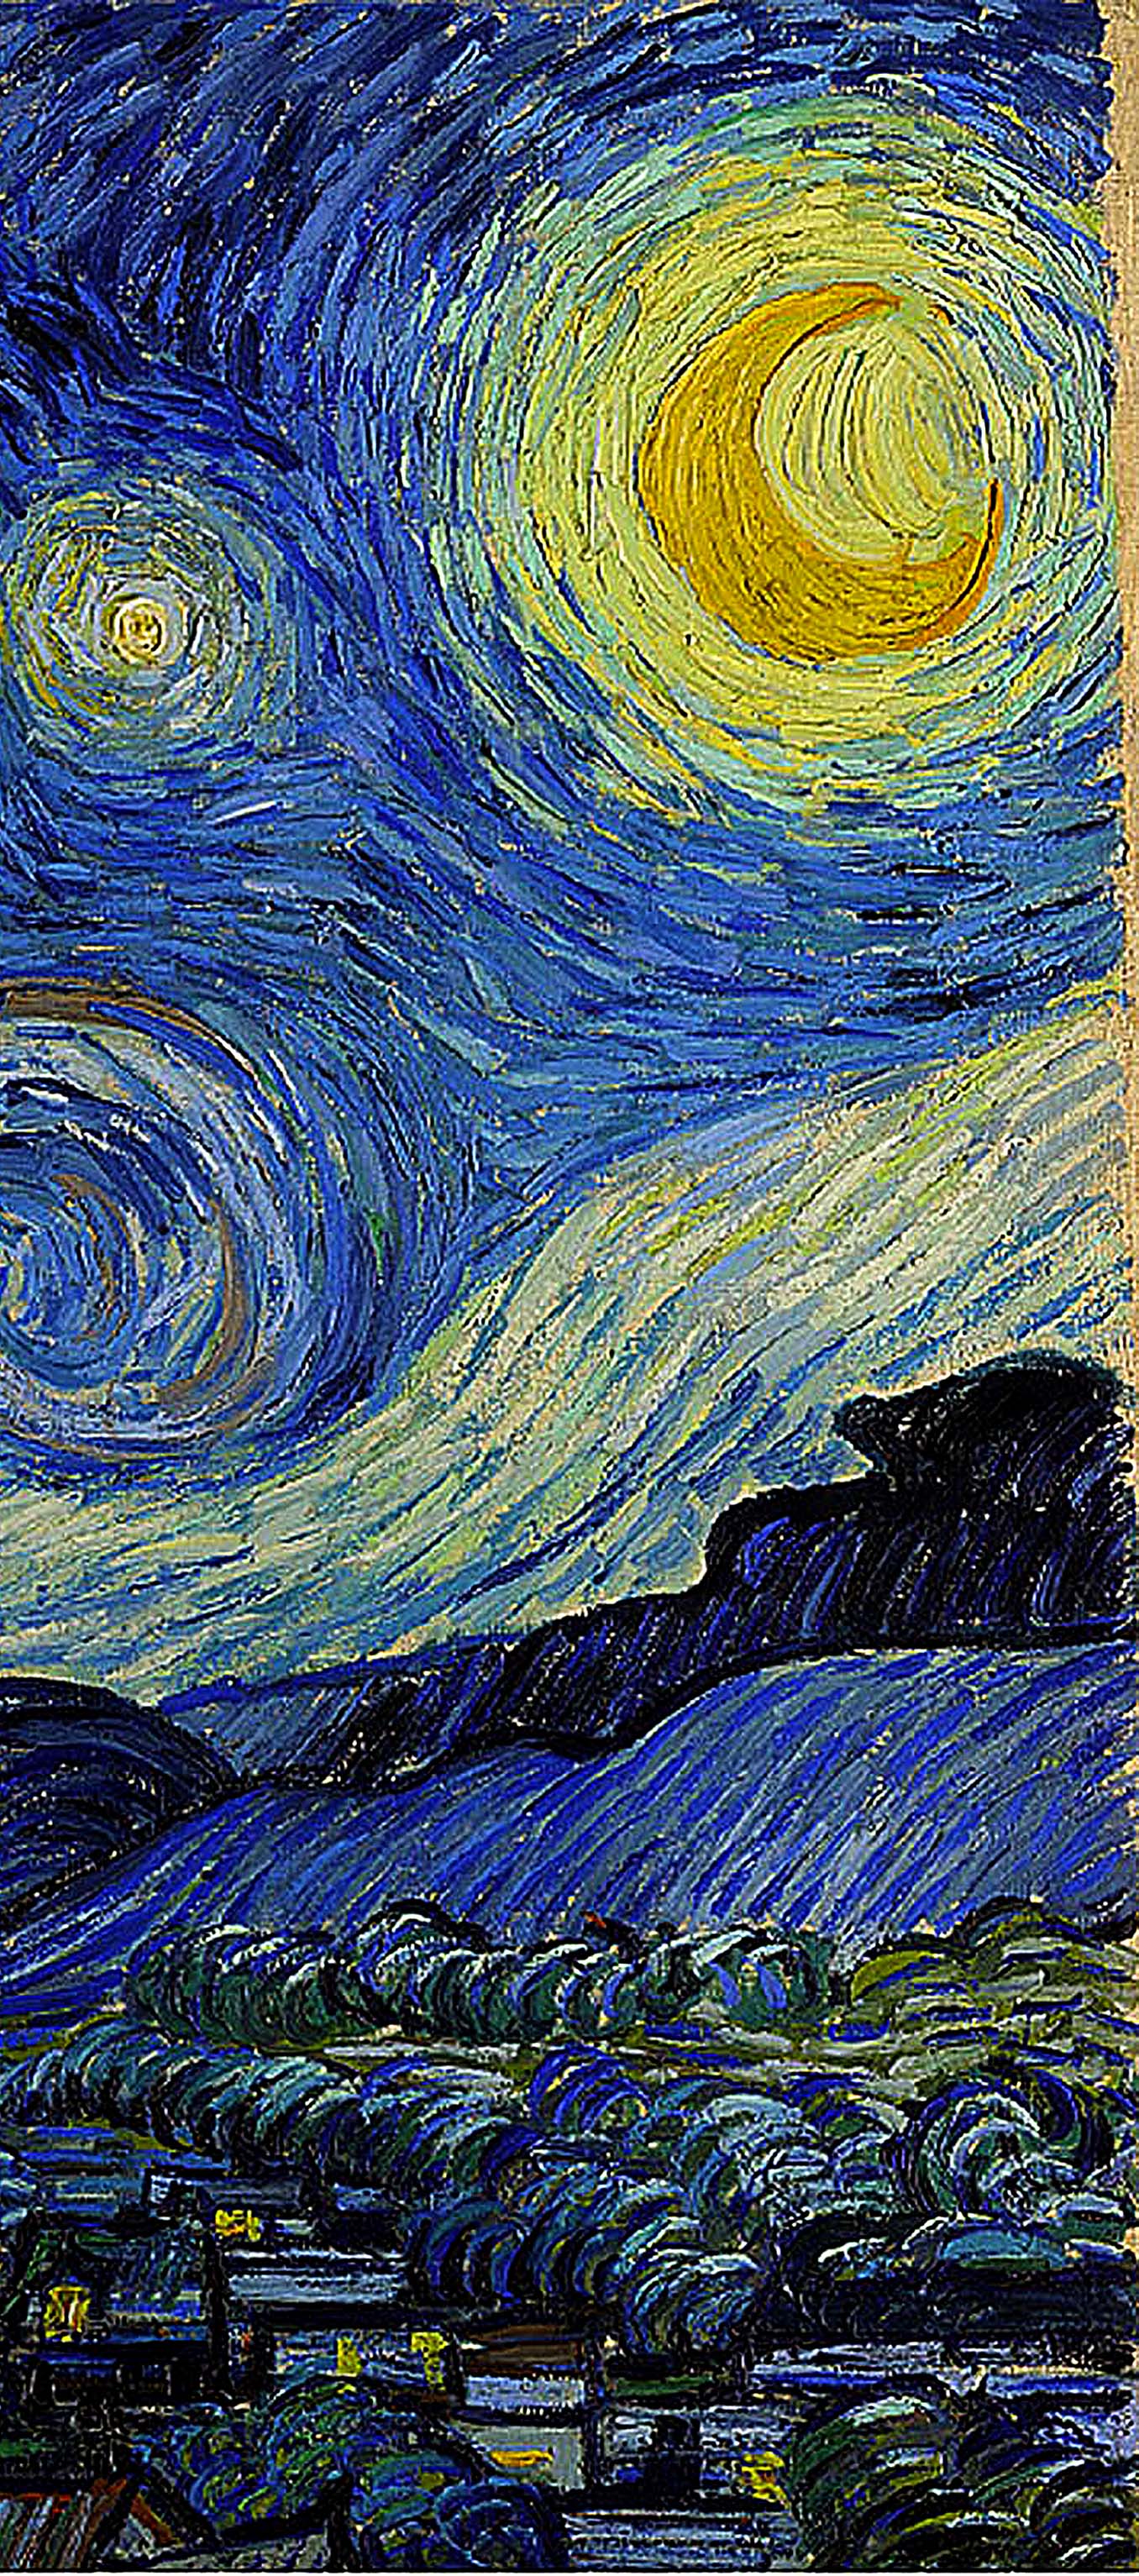 Starry Night' detail 1889 Vincent van Gogh. Art. Van